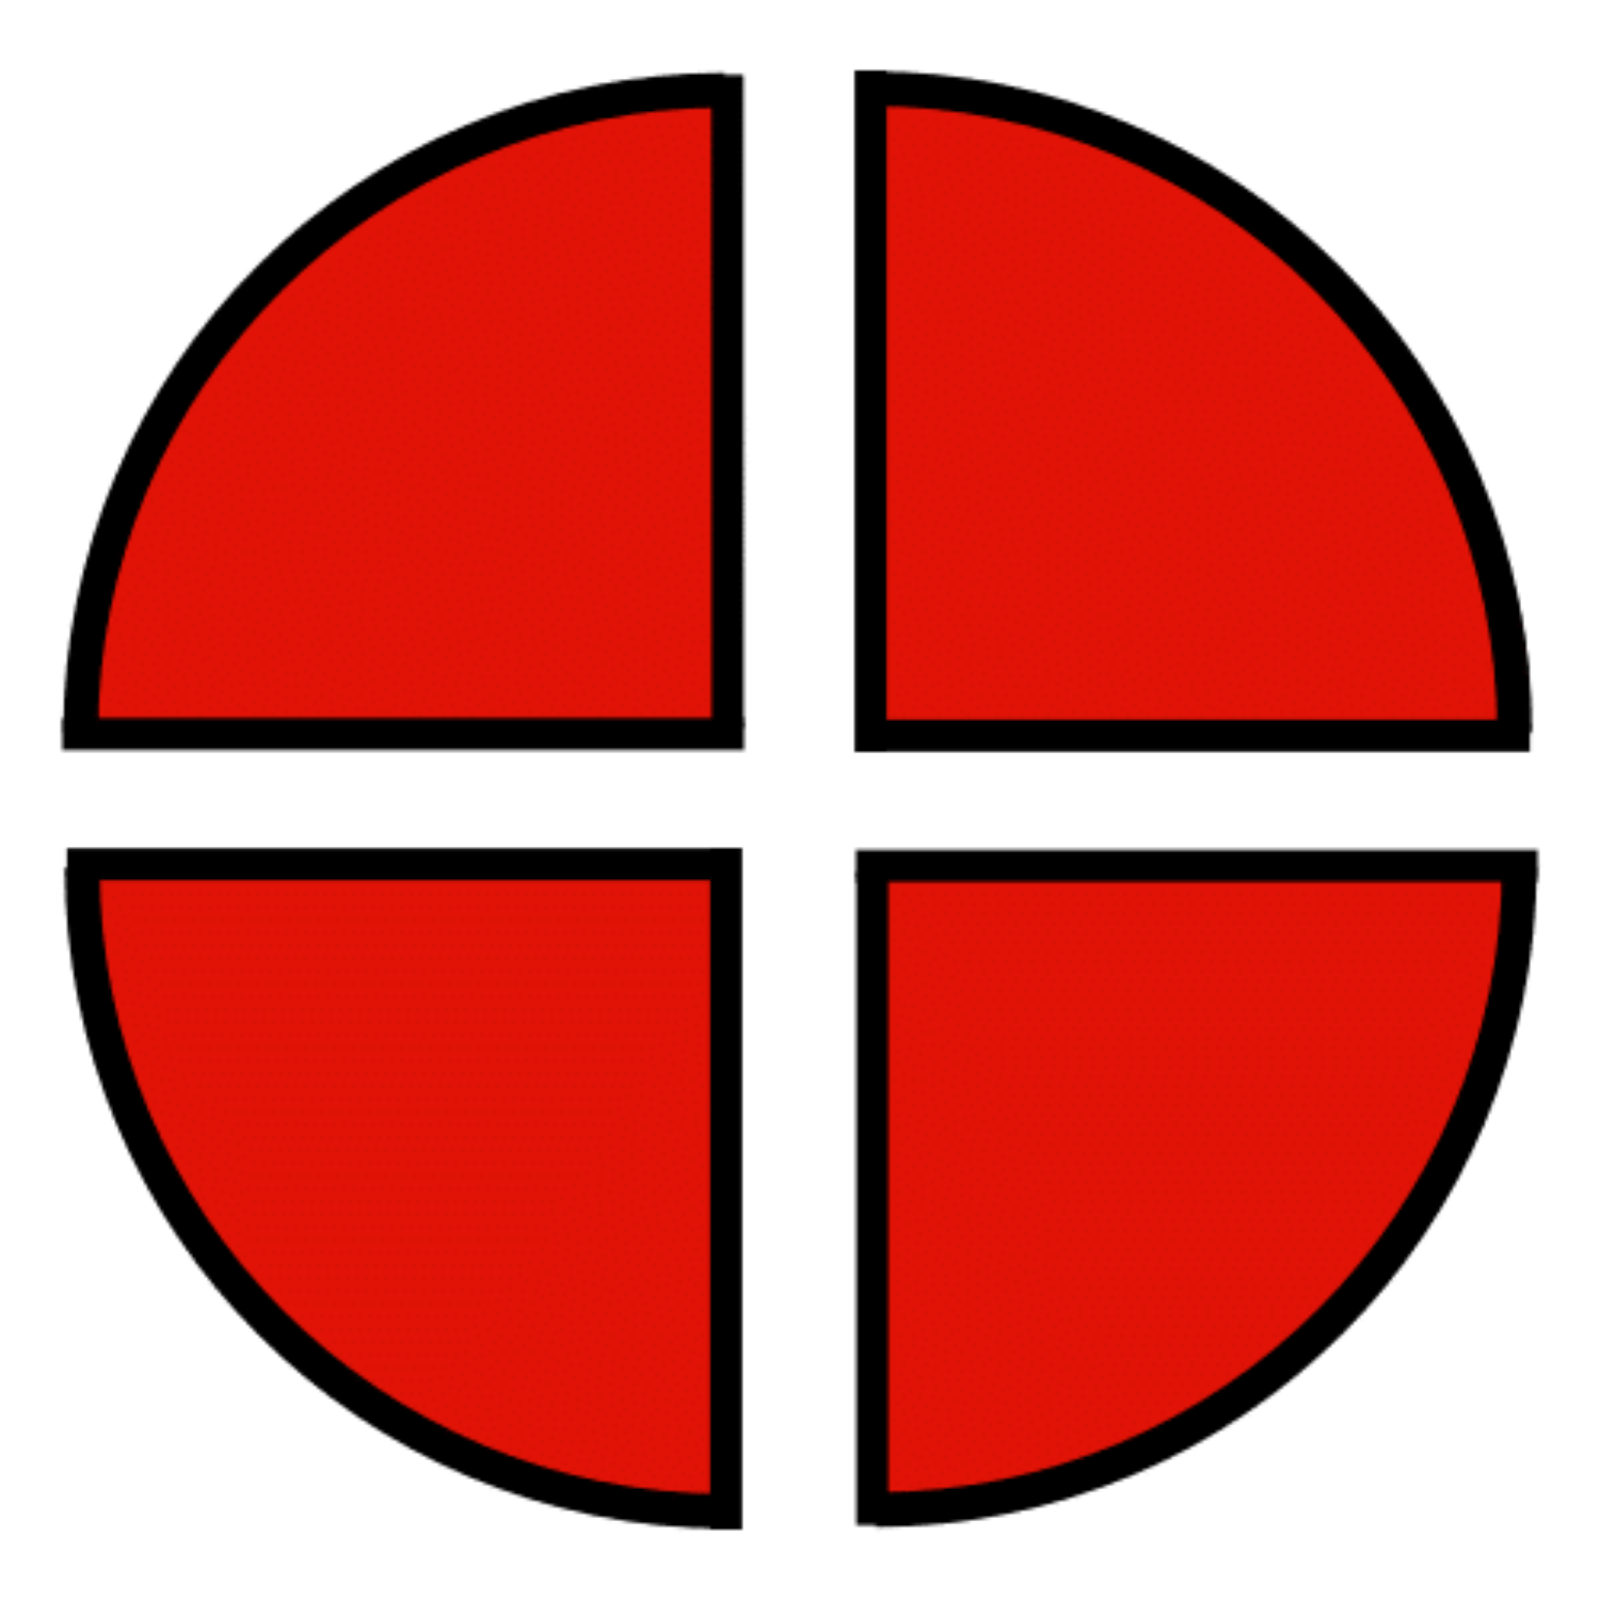 La imagen muestra un círculo partido en cuatro partes iguales.